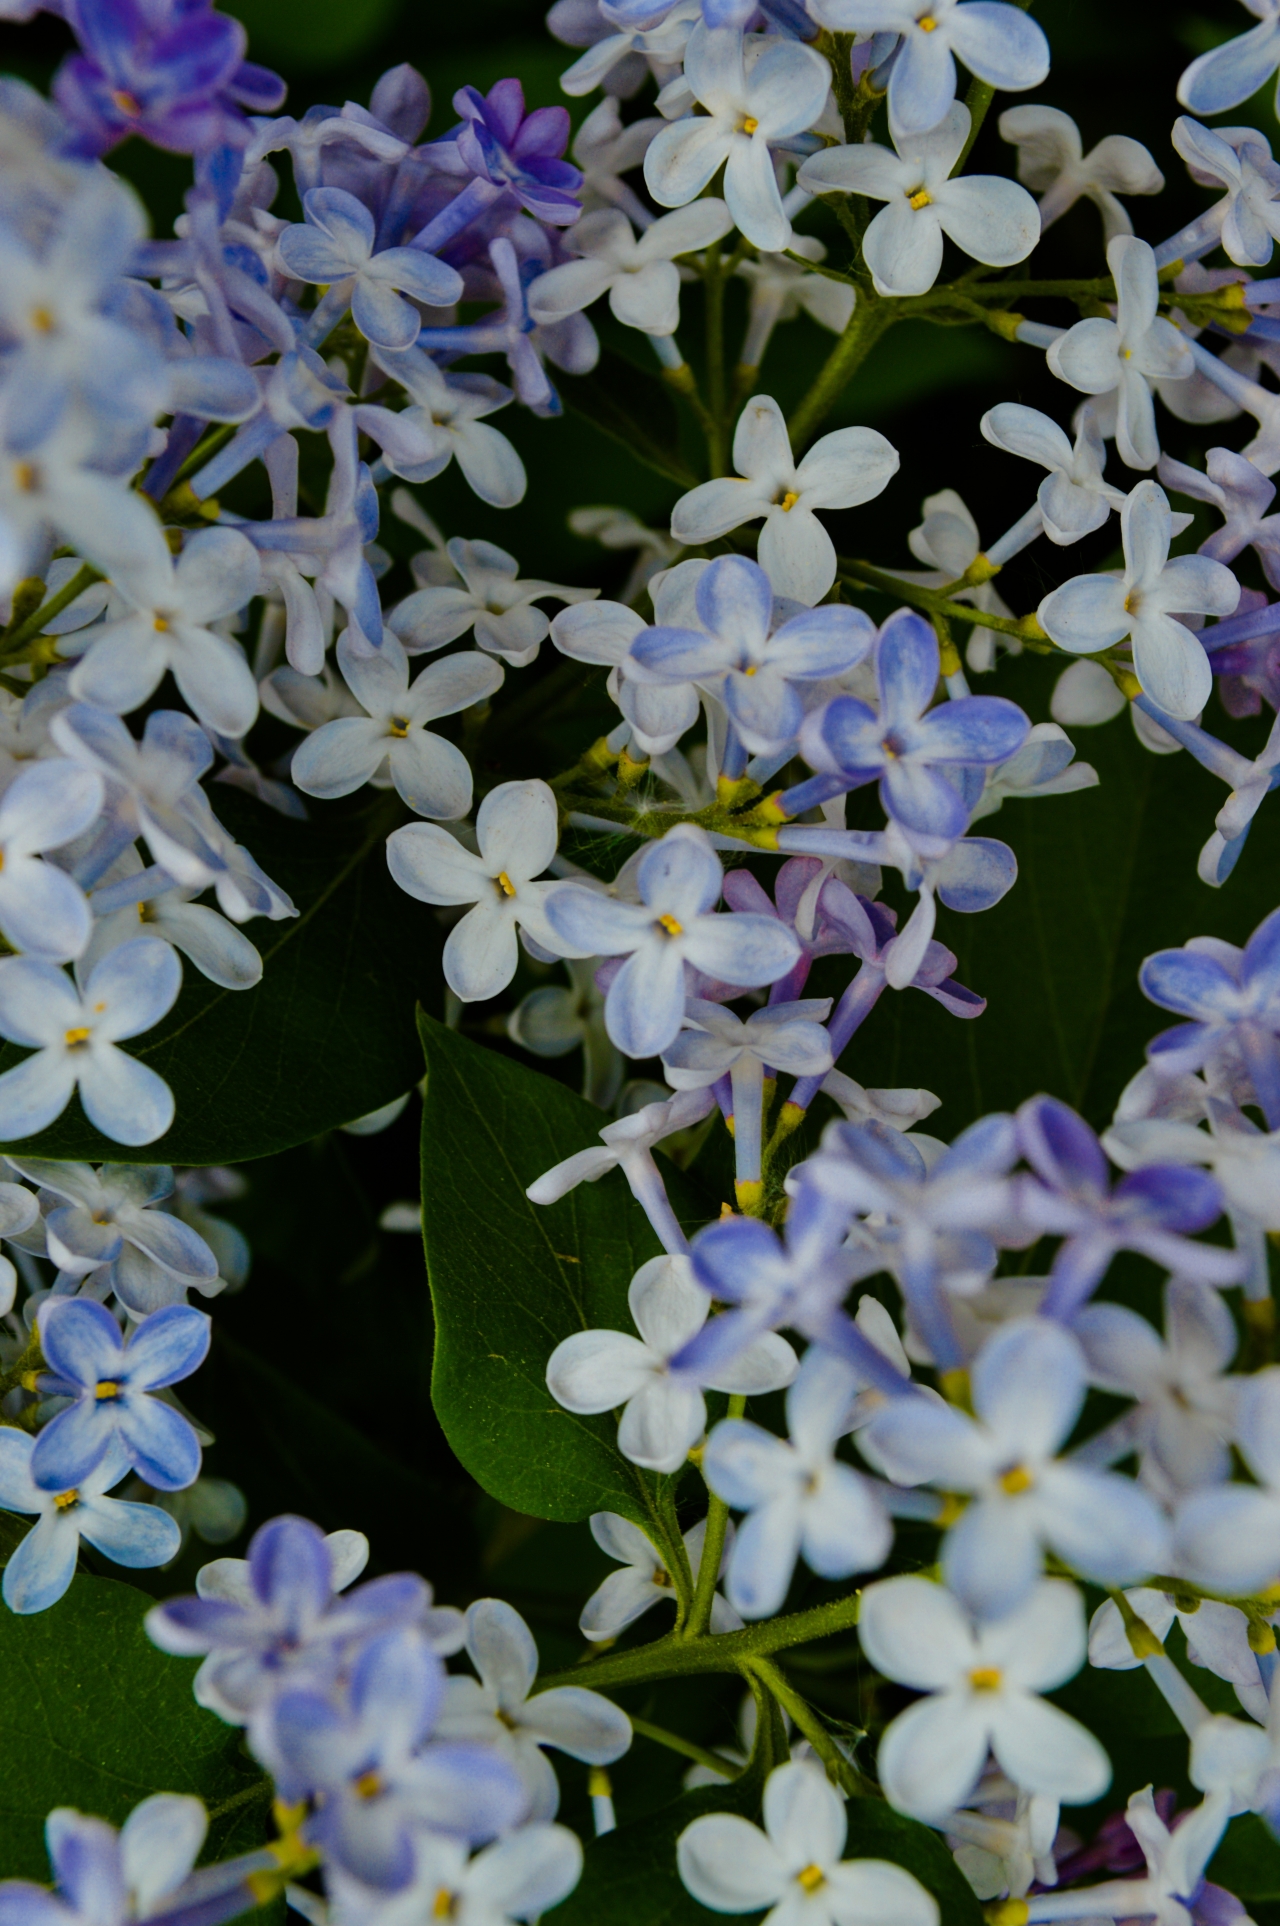 户外自然绿色叶子紫色白色花朵植物高清图片下载